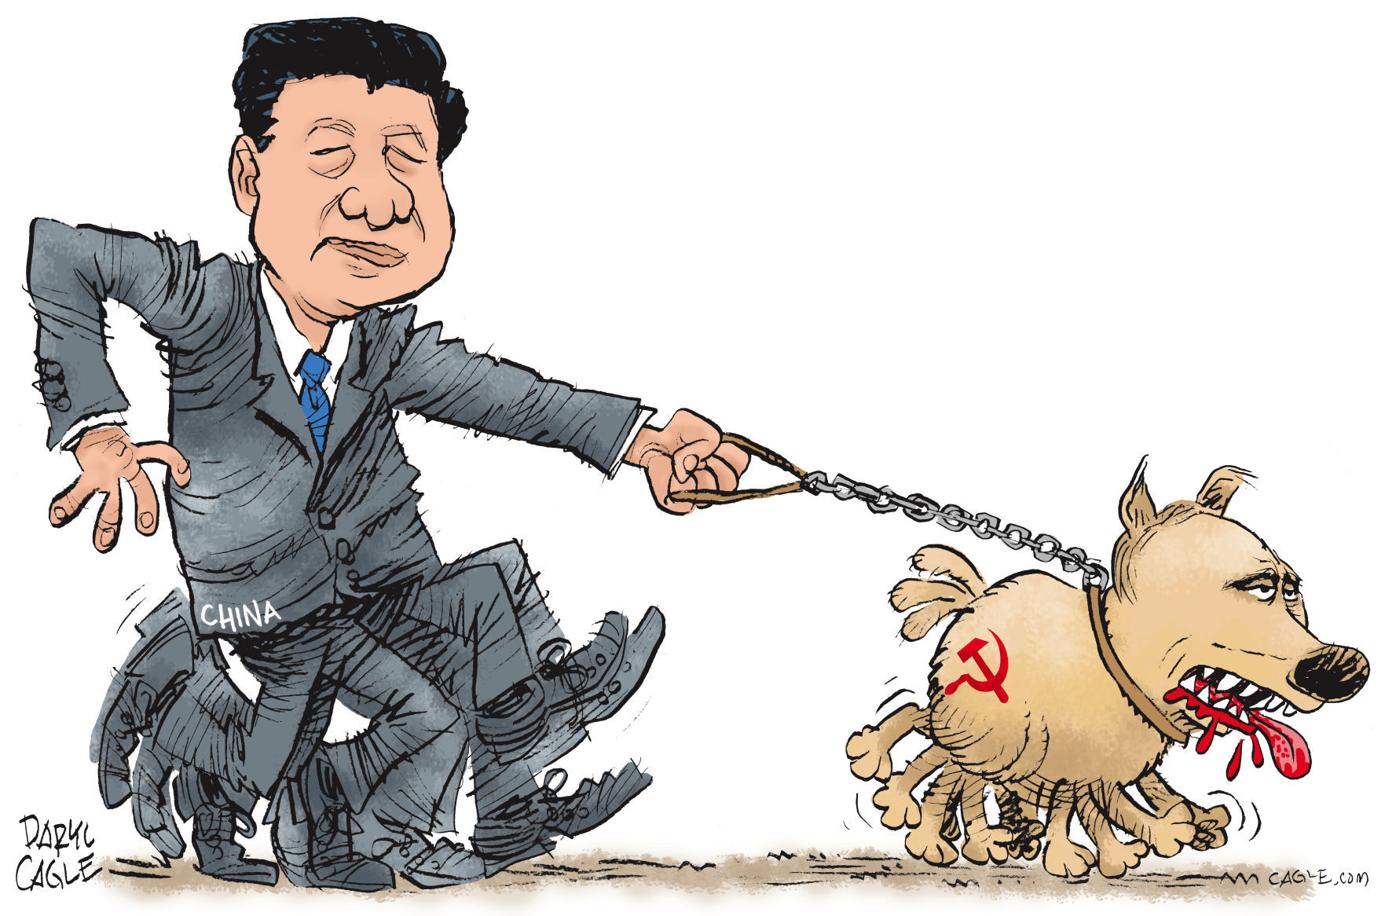 DARYL CAGLE: Putin Dragging Xi Jinping | Editorial Cartoons 